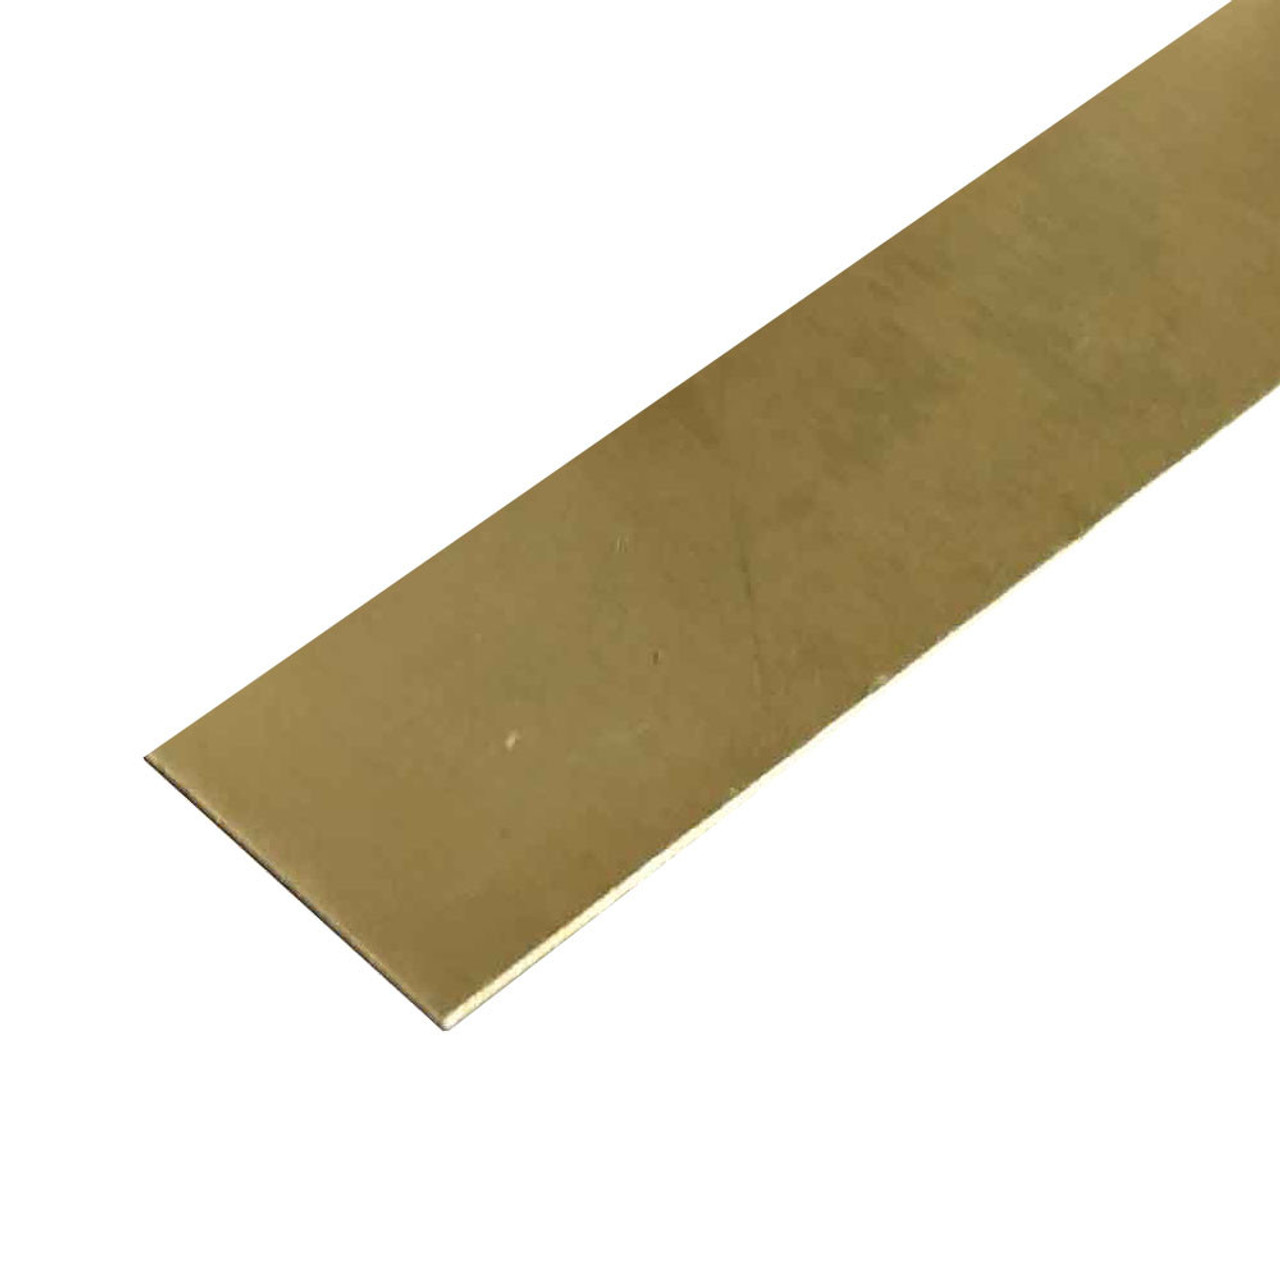 0.190" x 2.25" x 12", C260-H02 Brass Sheet, Plate, Flat Bar